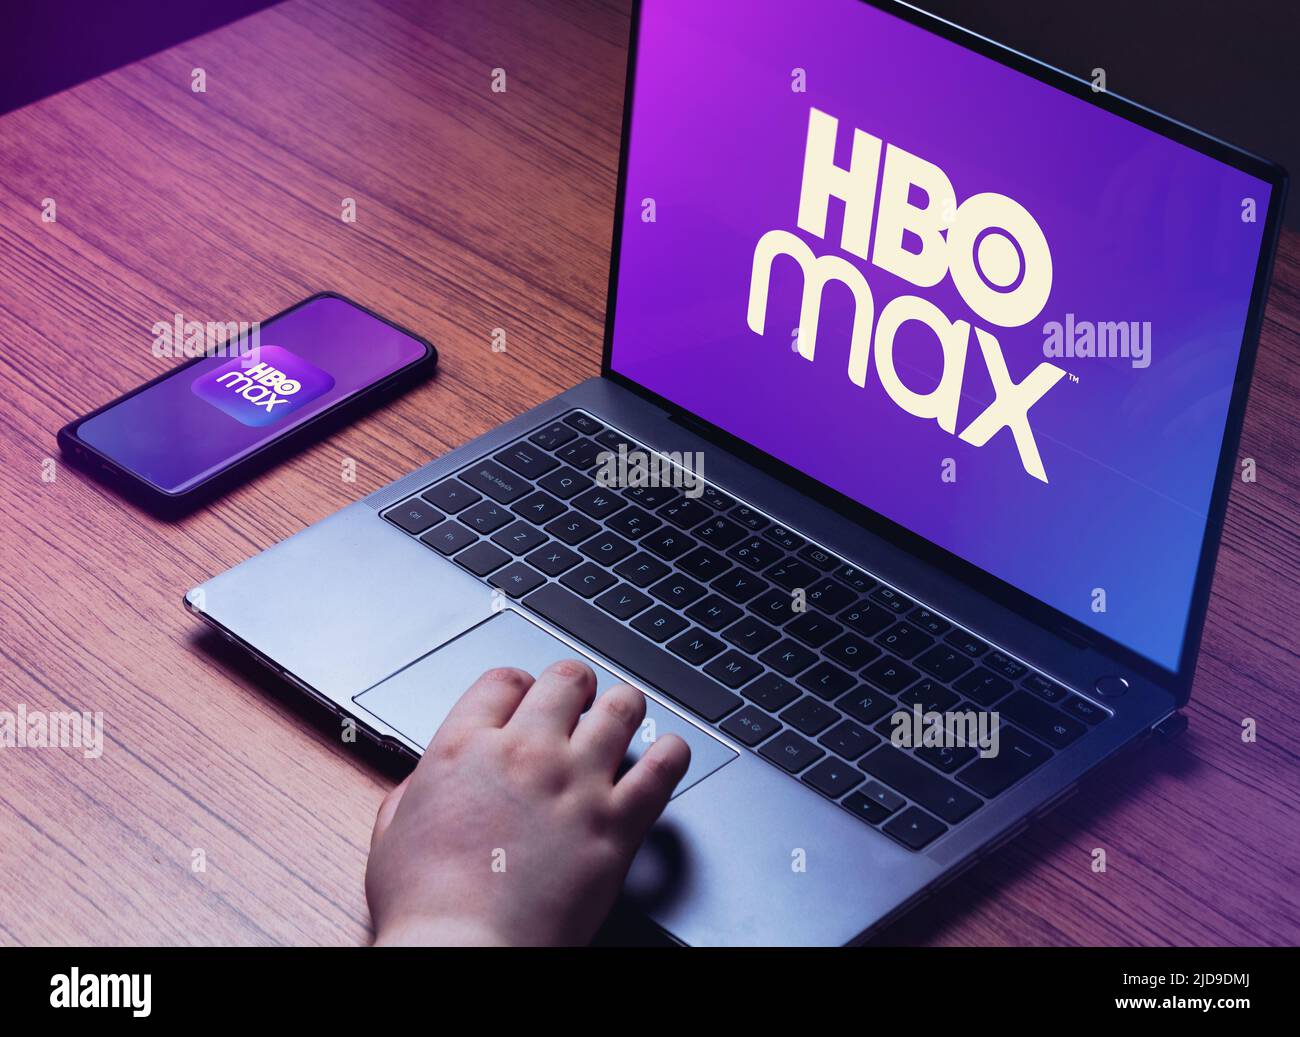 Jeune femme regardant HBO Max sur un ordinateur portable. Logo HBO Max sur les écrans d'ordinateur portable et de smartphone. Bureau en bois avec ordinateur portable et élégant Banque D'Images